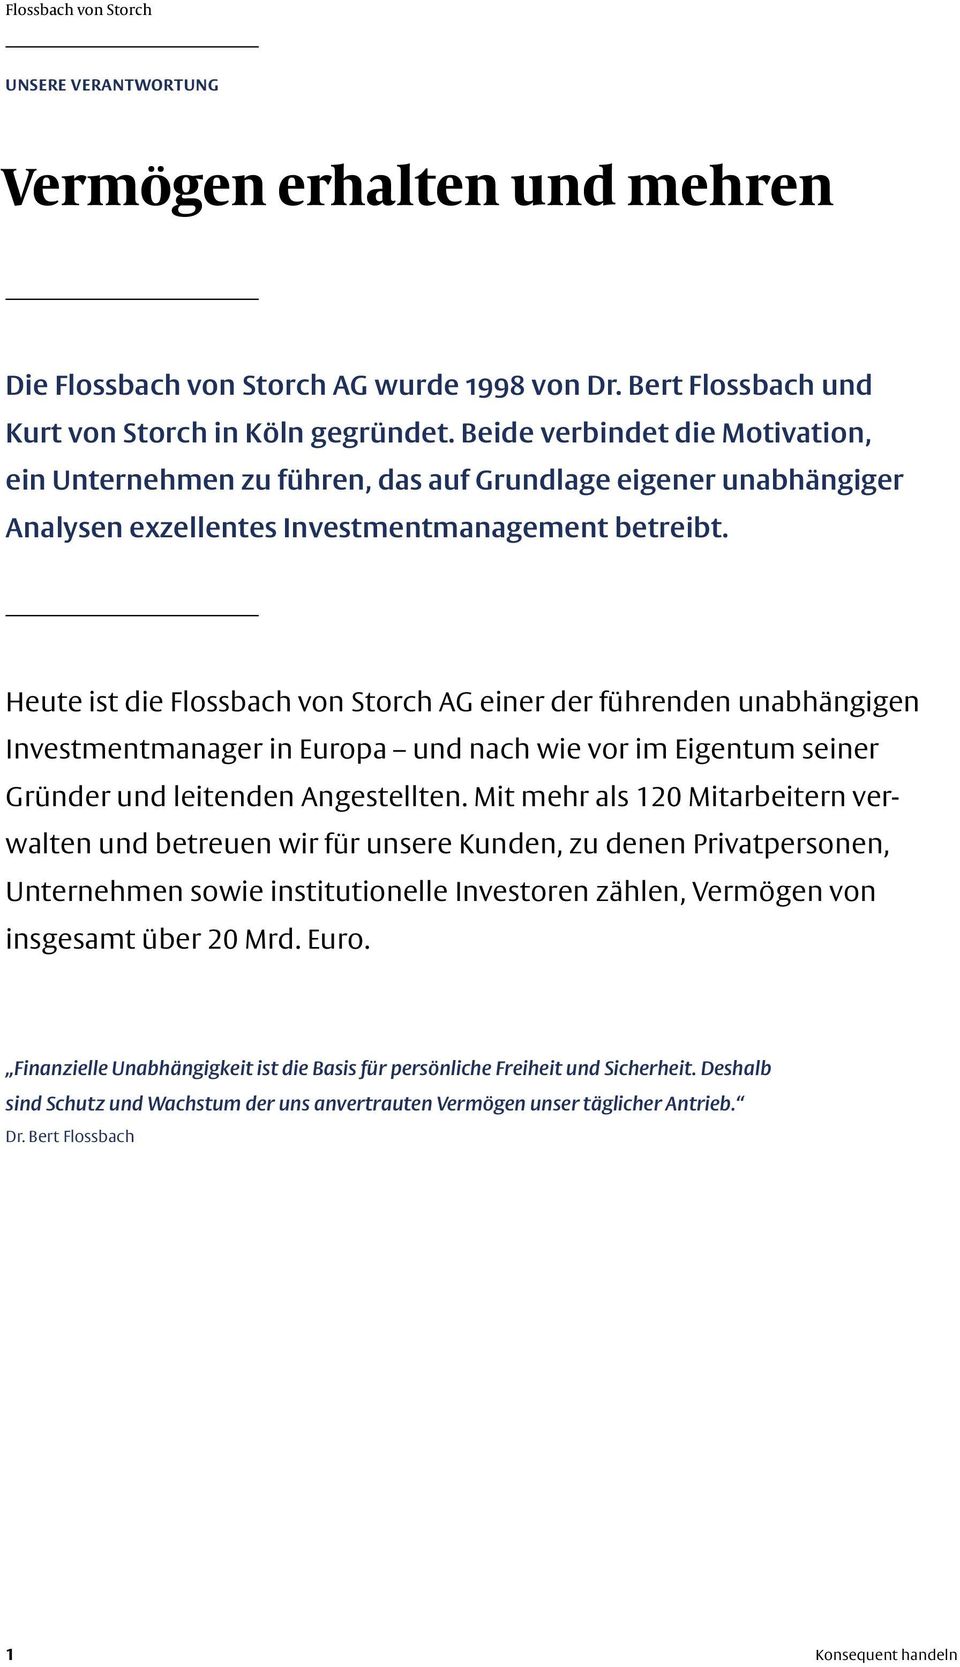 Heute ist die Flossbach von Storch AG einer der führenden unabhängigen Investmentmanager in Europa und nach wie vor im Eigentum seiner Gründer und leitenden Angestellten.